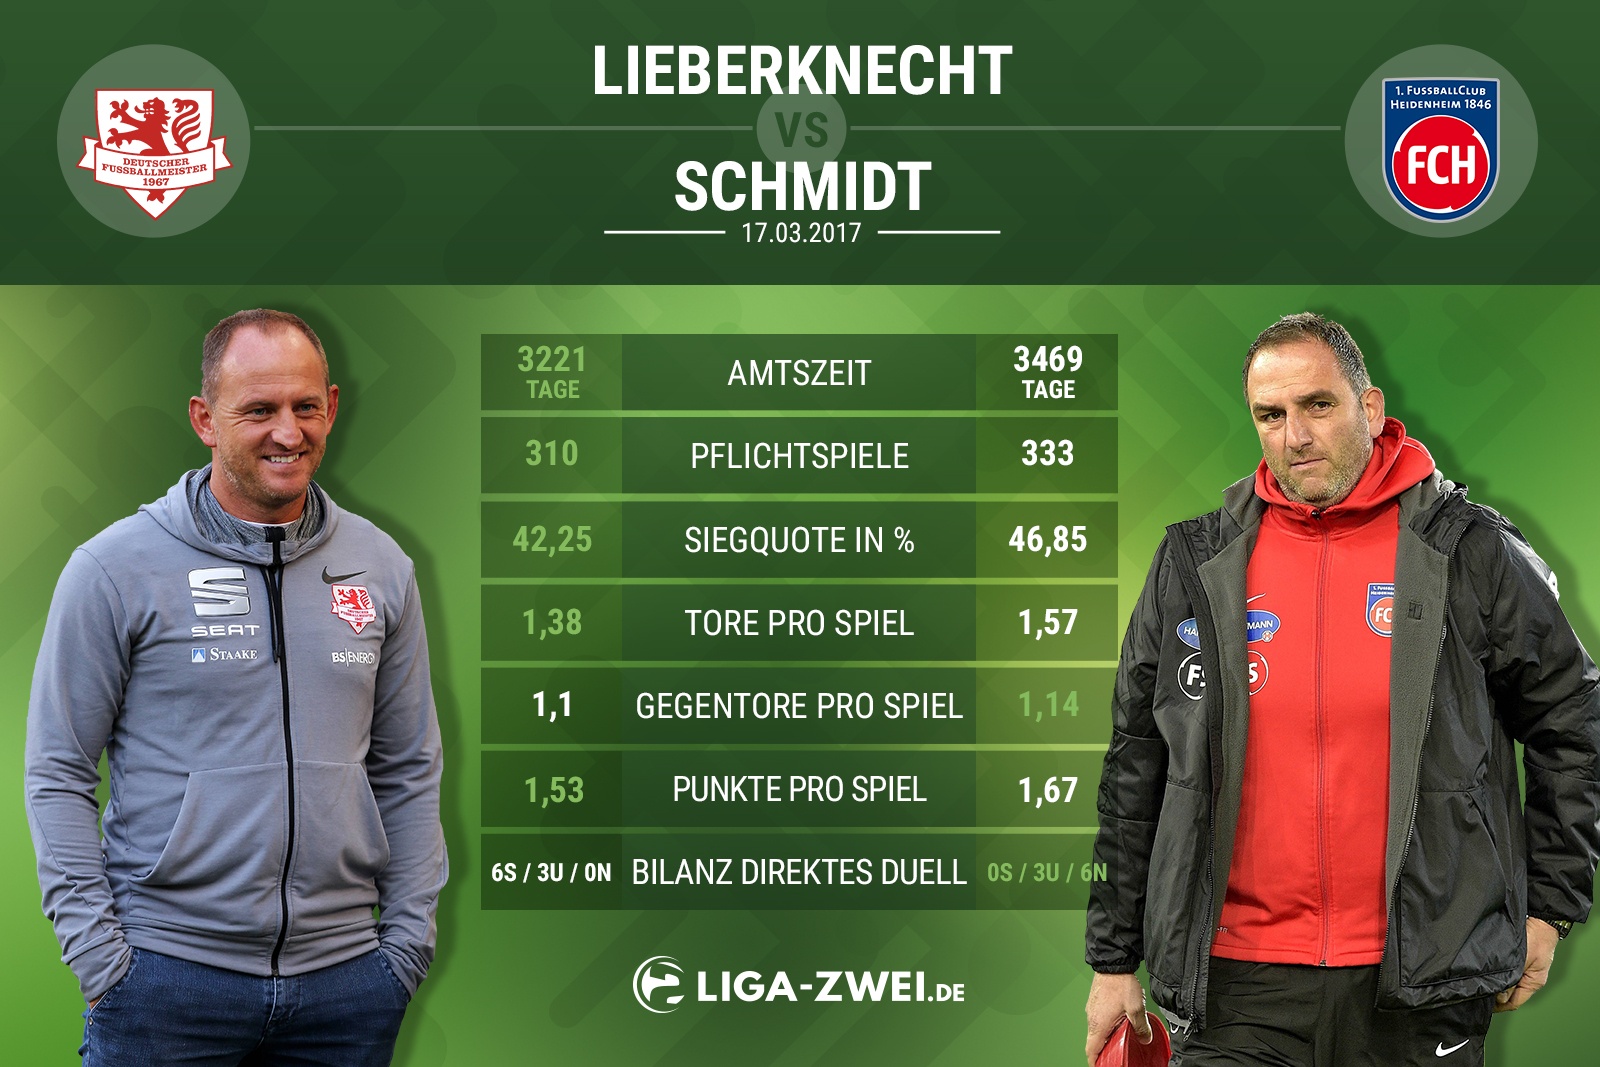 Trainervergleich zwischen Lieberknecht & Schmidt